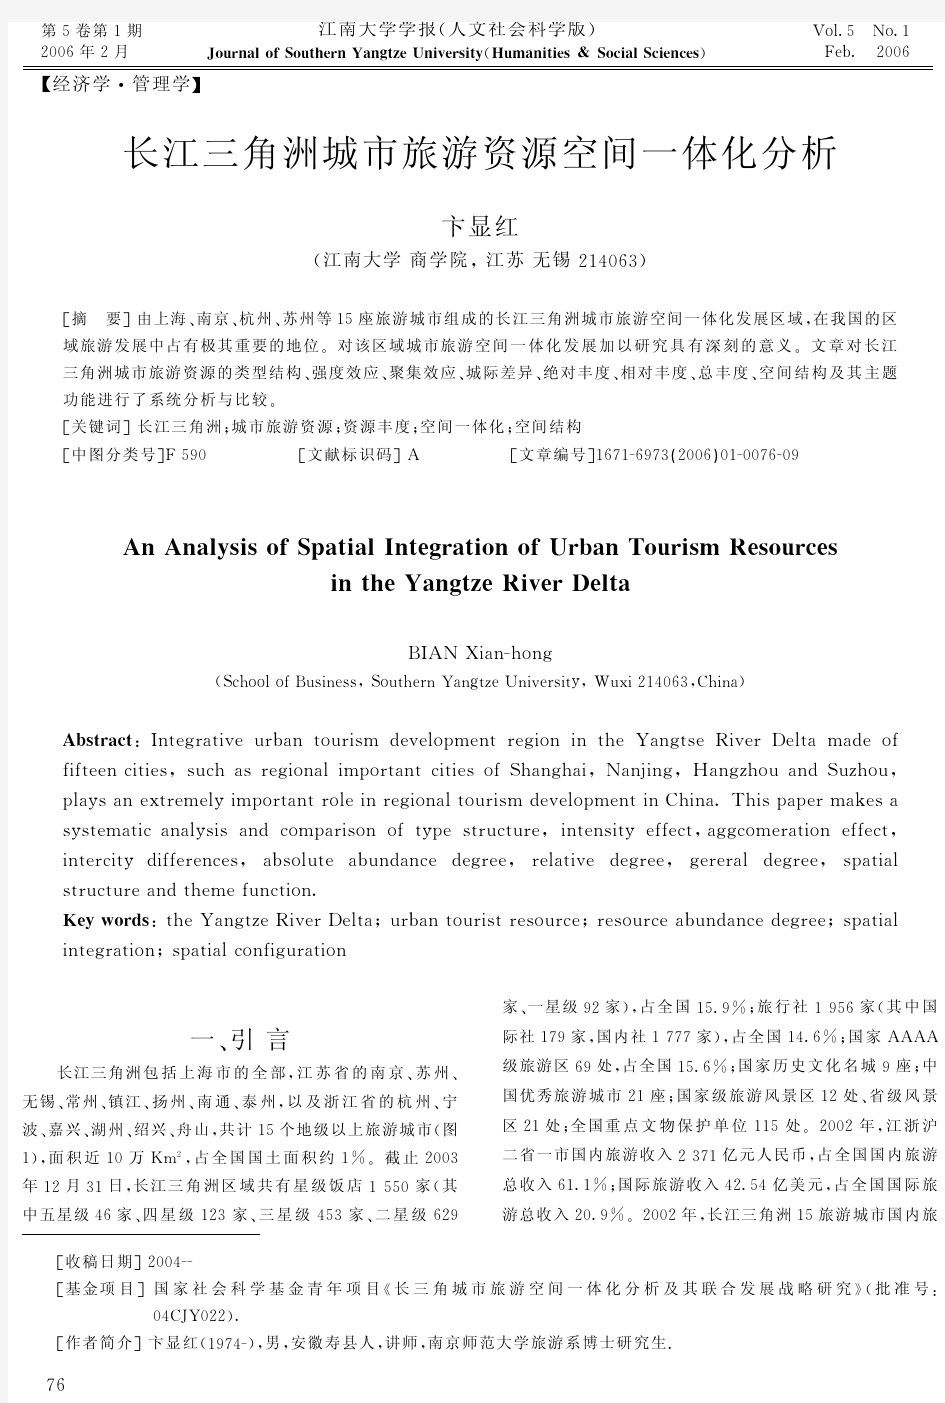 长江三角洲城市旅游资源空间一体化分析